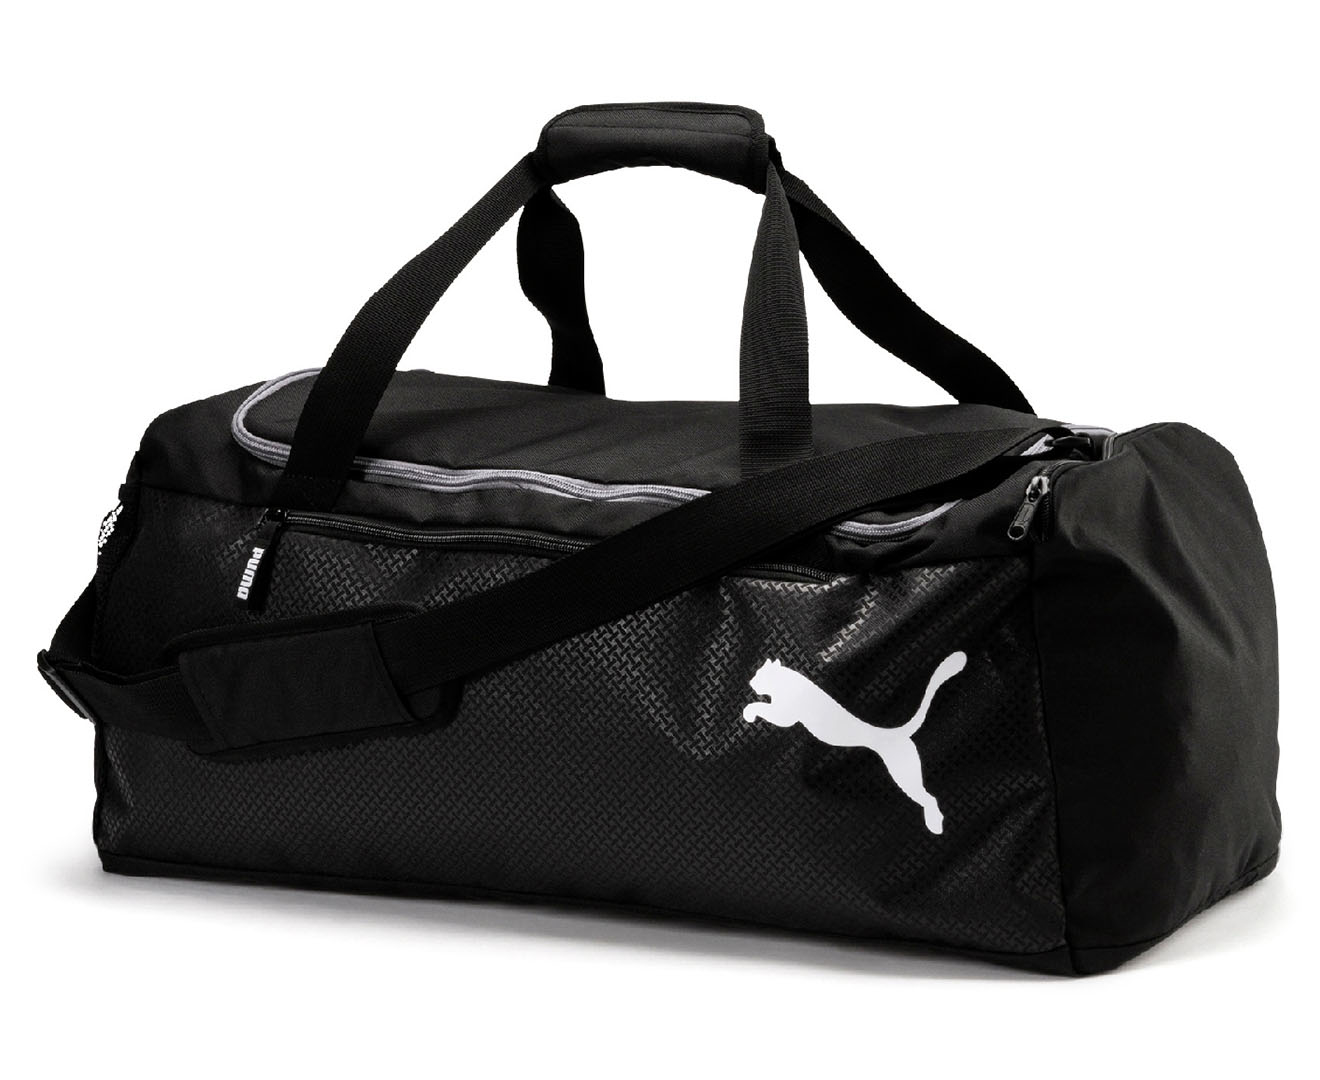 Puma Medium Fundamentals Sports Bag - Puma Black | Catch.com.au